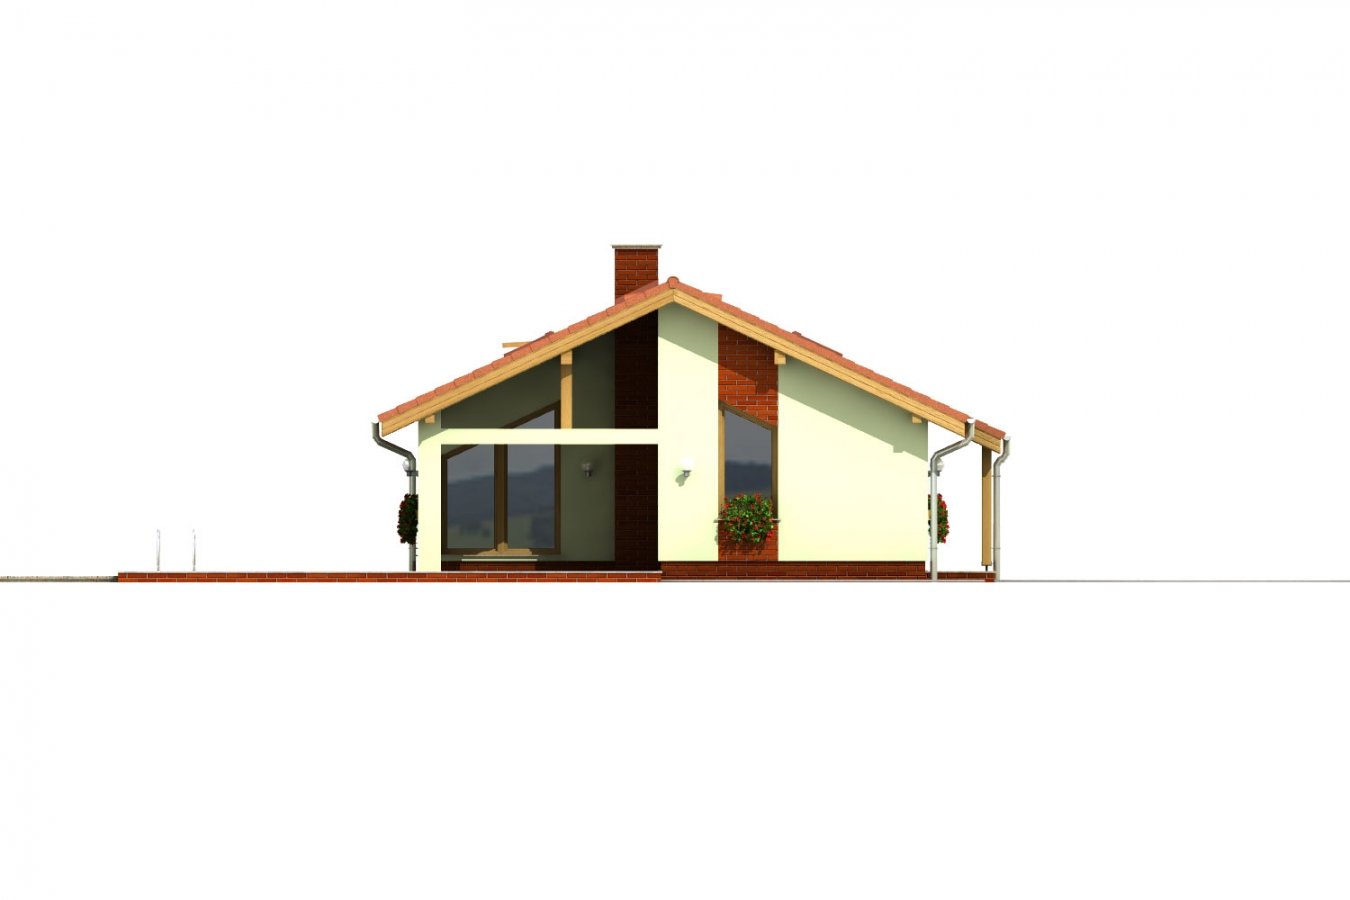 Pohľad 1. - Úzký rodinný dům s překrytou terasou, zpracovaný v 3d realitě.